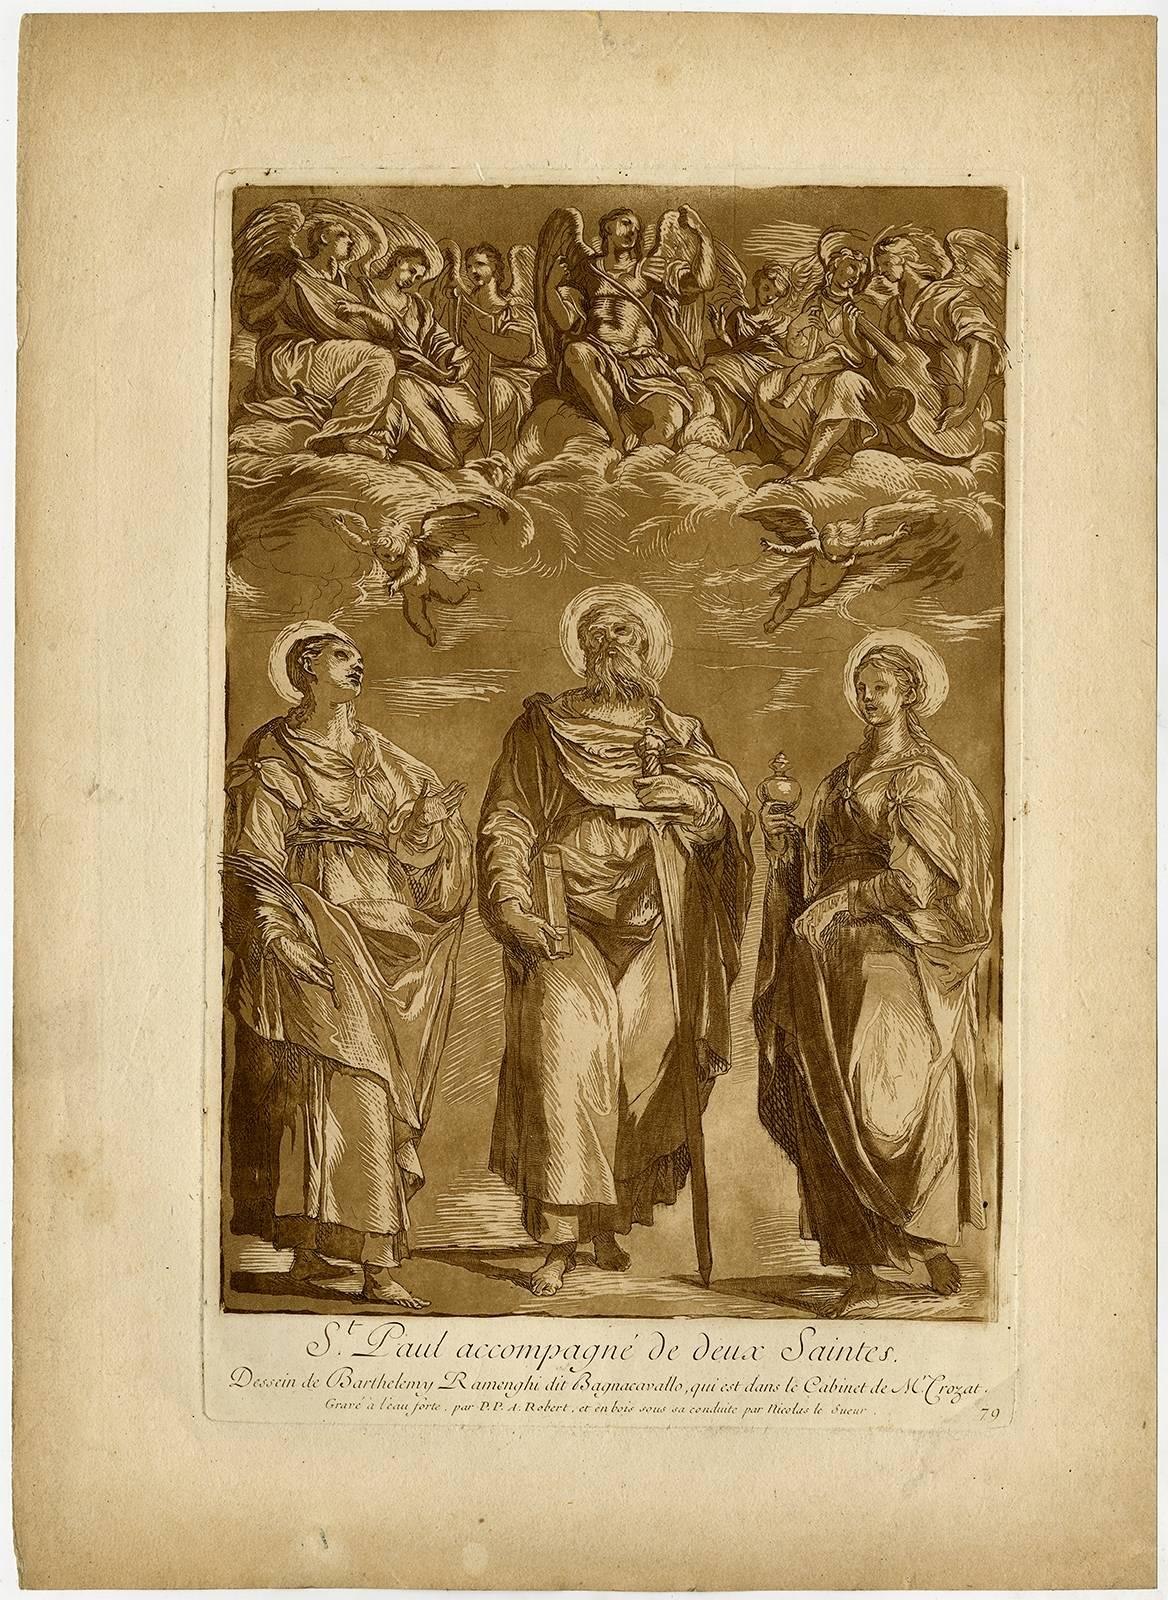 Paul Ponce Antoine Robert de Sere Figurative Print - St. Paul accompagne de deux saints.